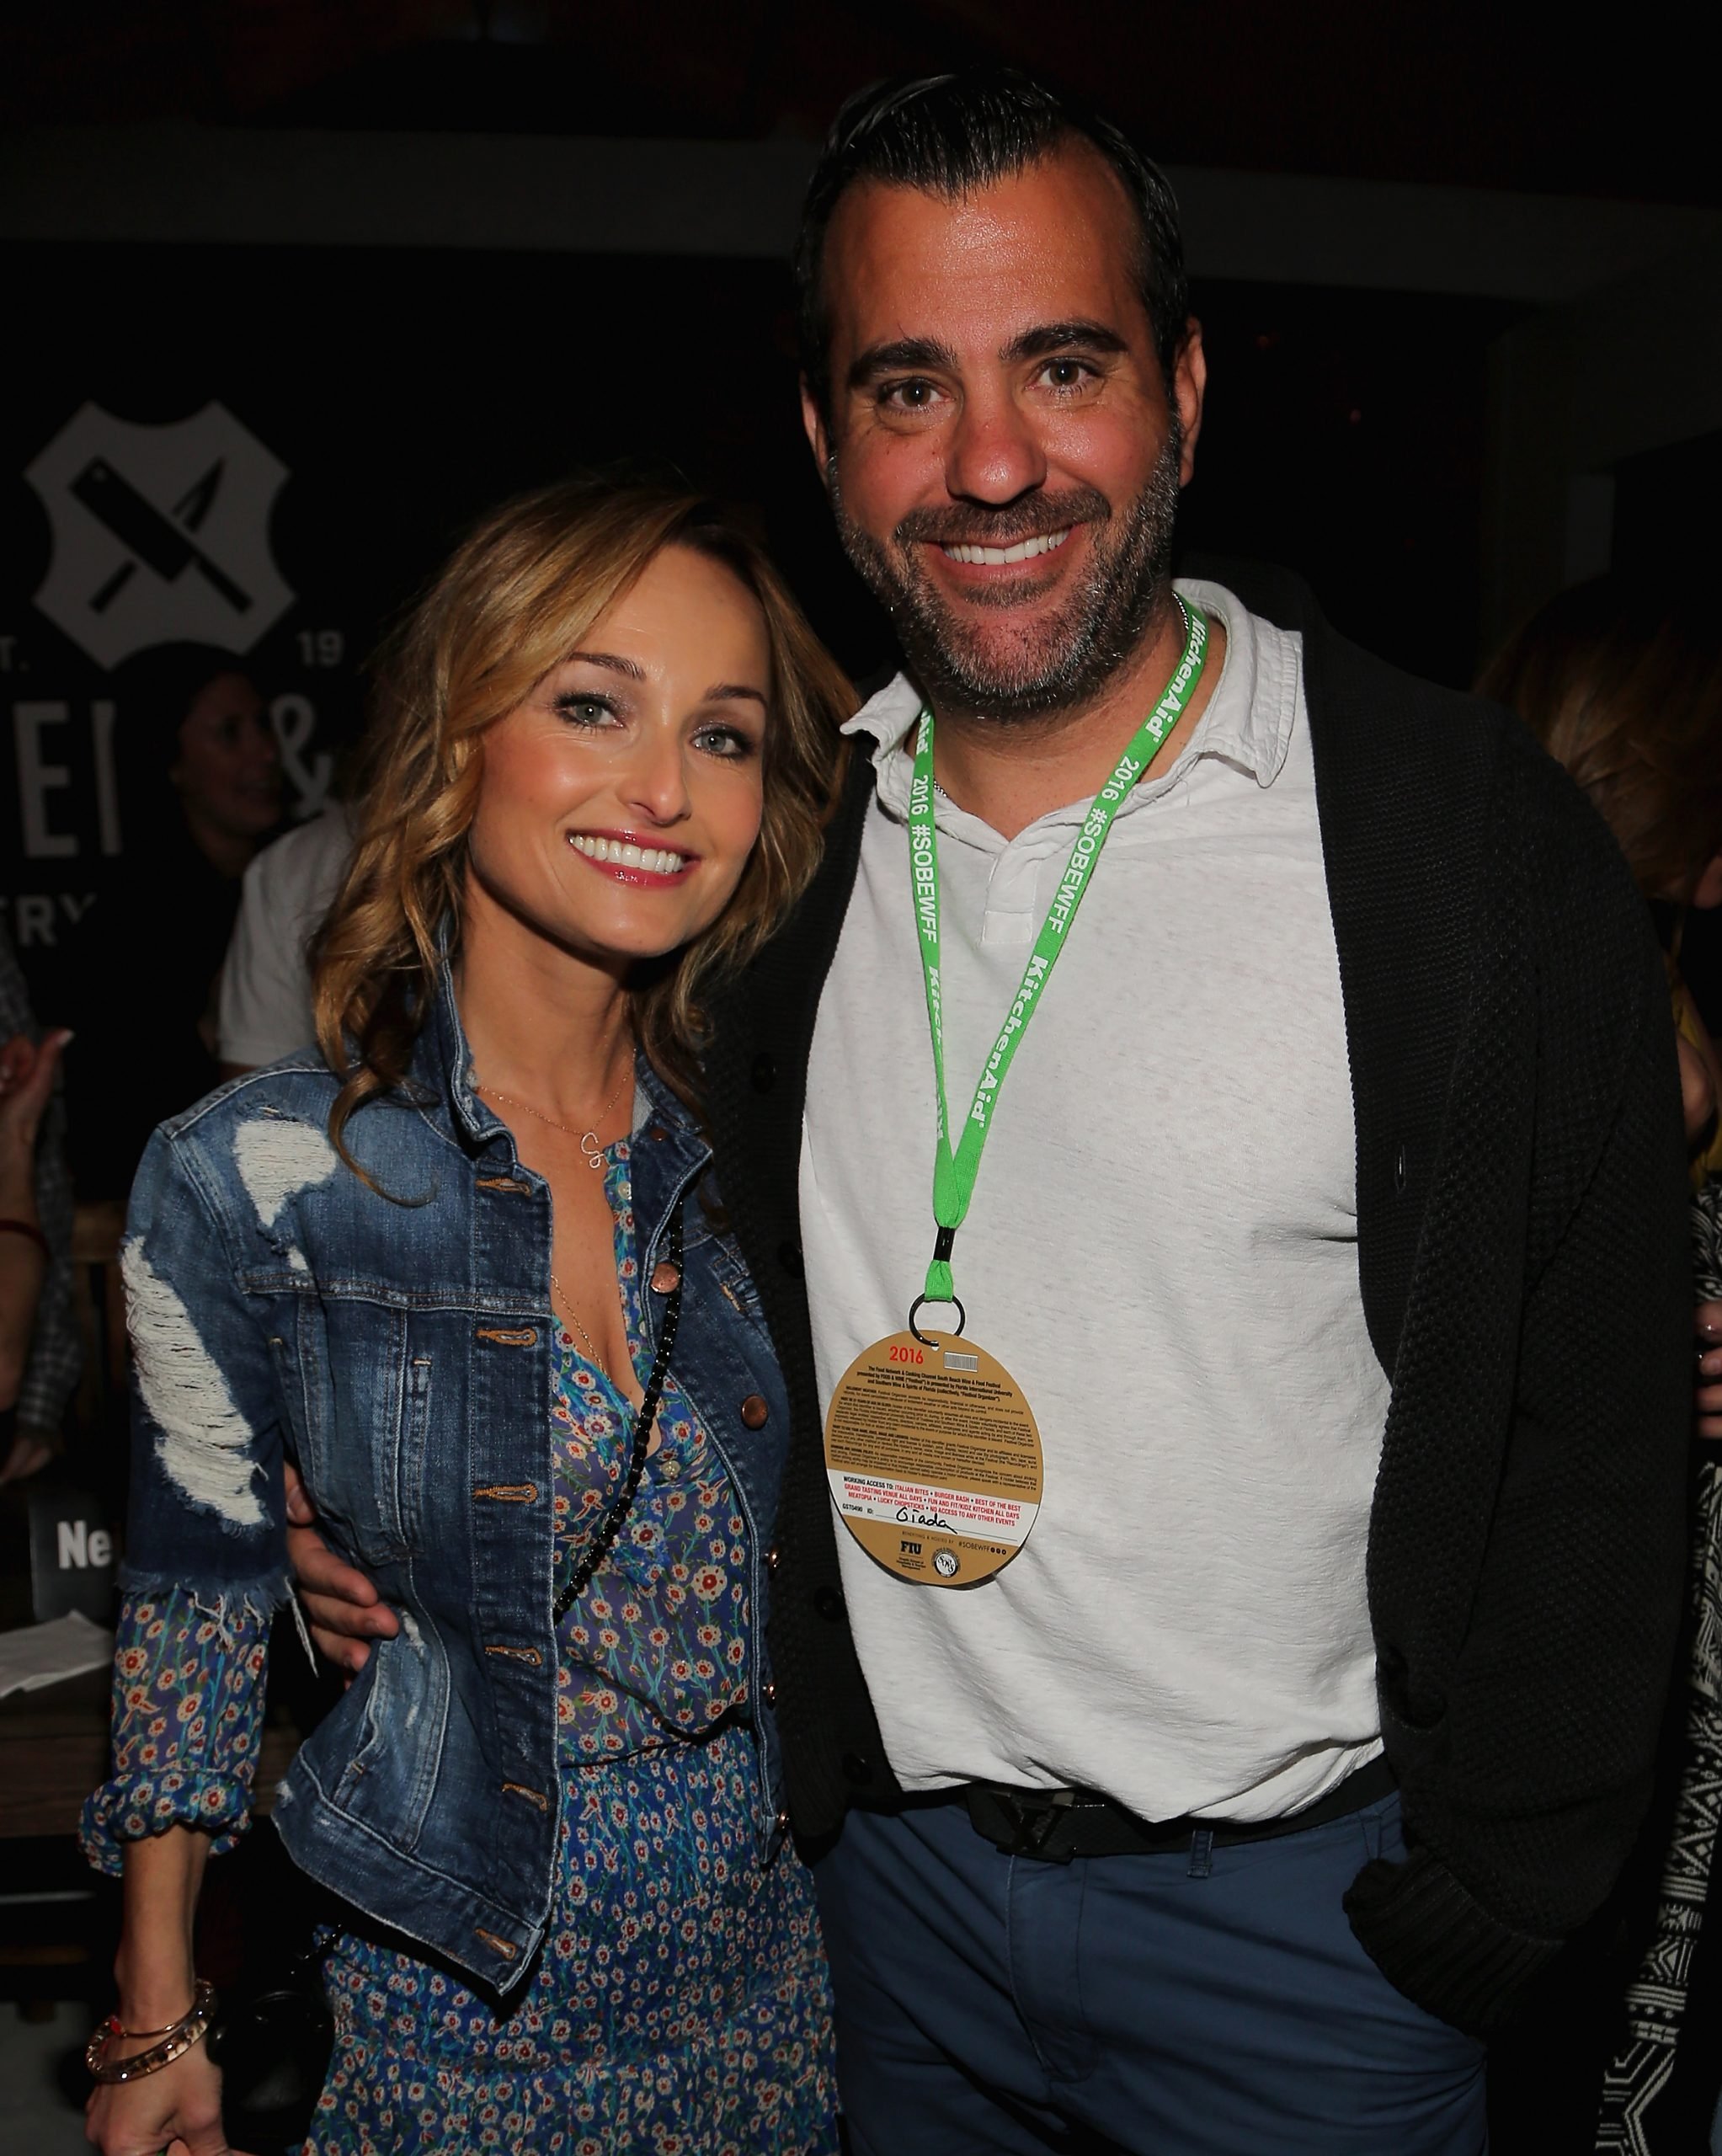 Celebrity chef Giada De Laurentiis with her boyfriend, television producer Shane Farley in 2016.